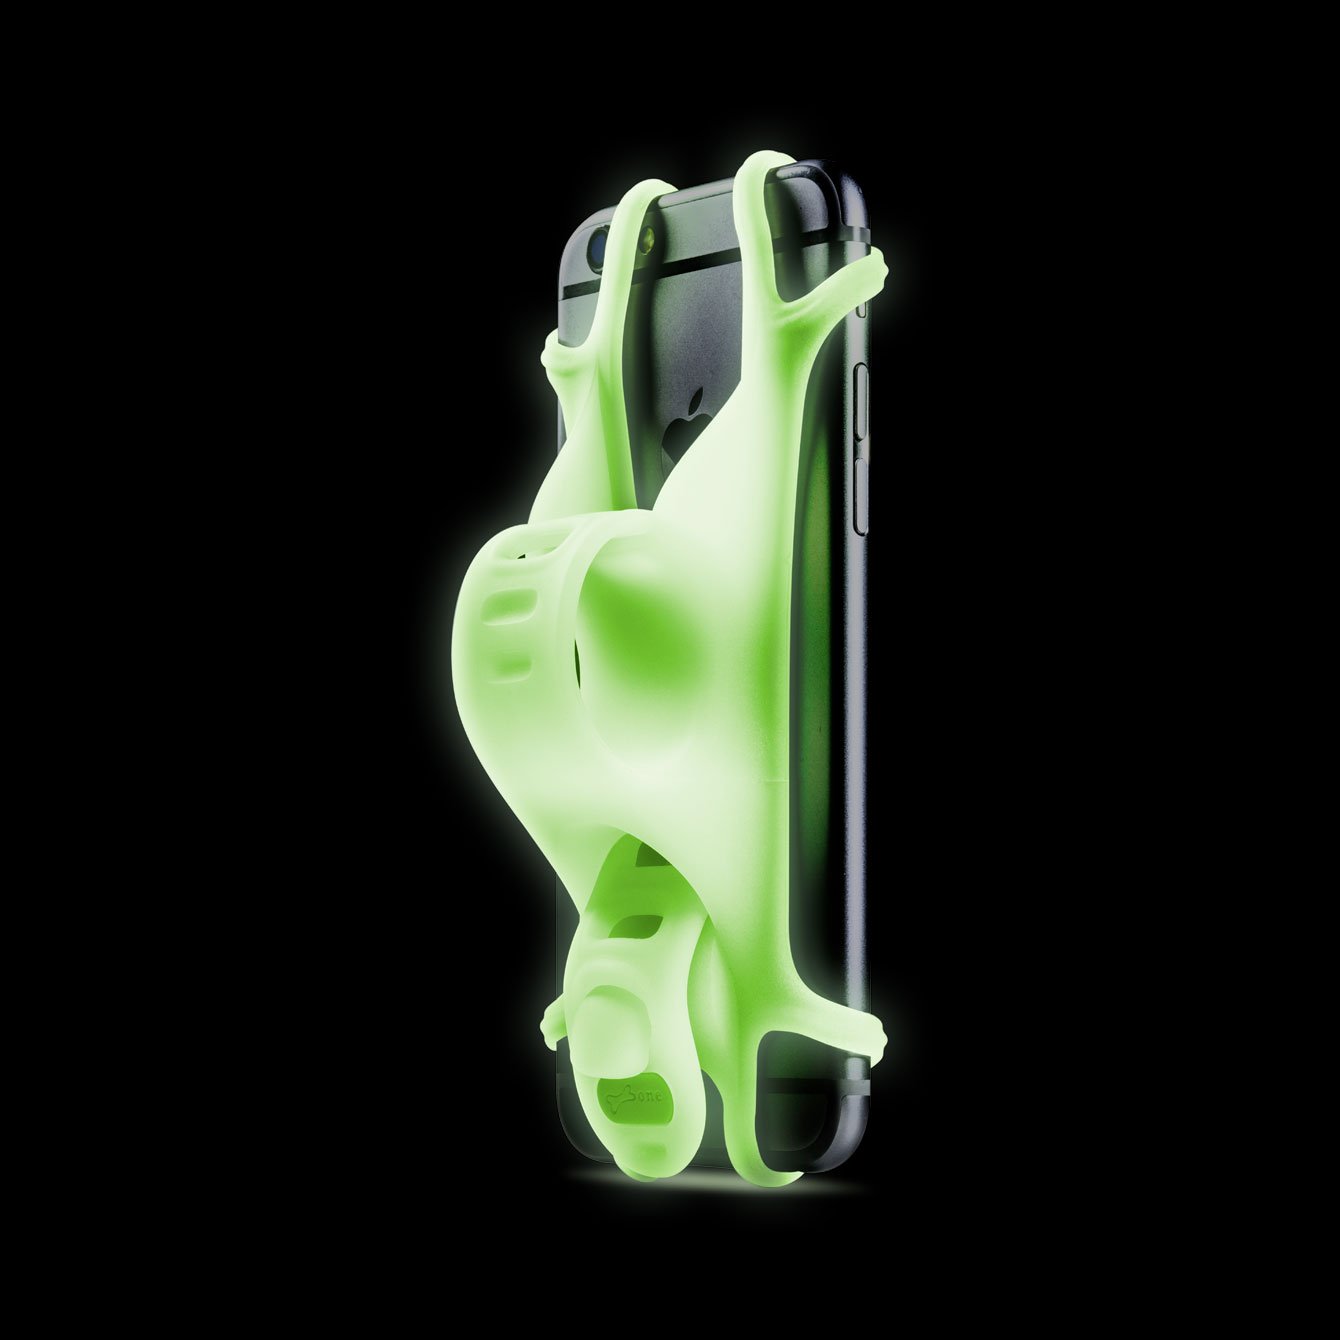 Держатель для смартфона Bone Collection BIKE TIE, силикон, на руль, 4.0'-6.0', люминисцентный зеленый, 07-150014 держатель для телефона rockbros на руль велосипеда силиконовый вращение на 360 градусов голубой lf436